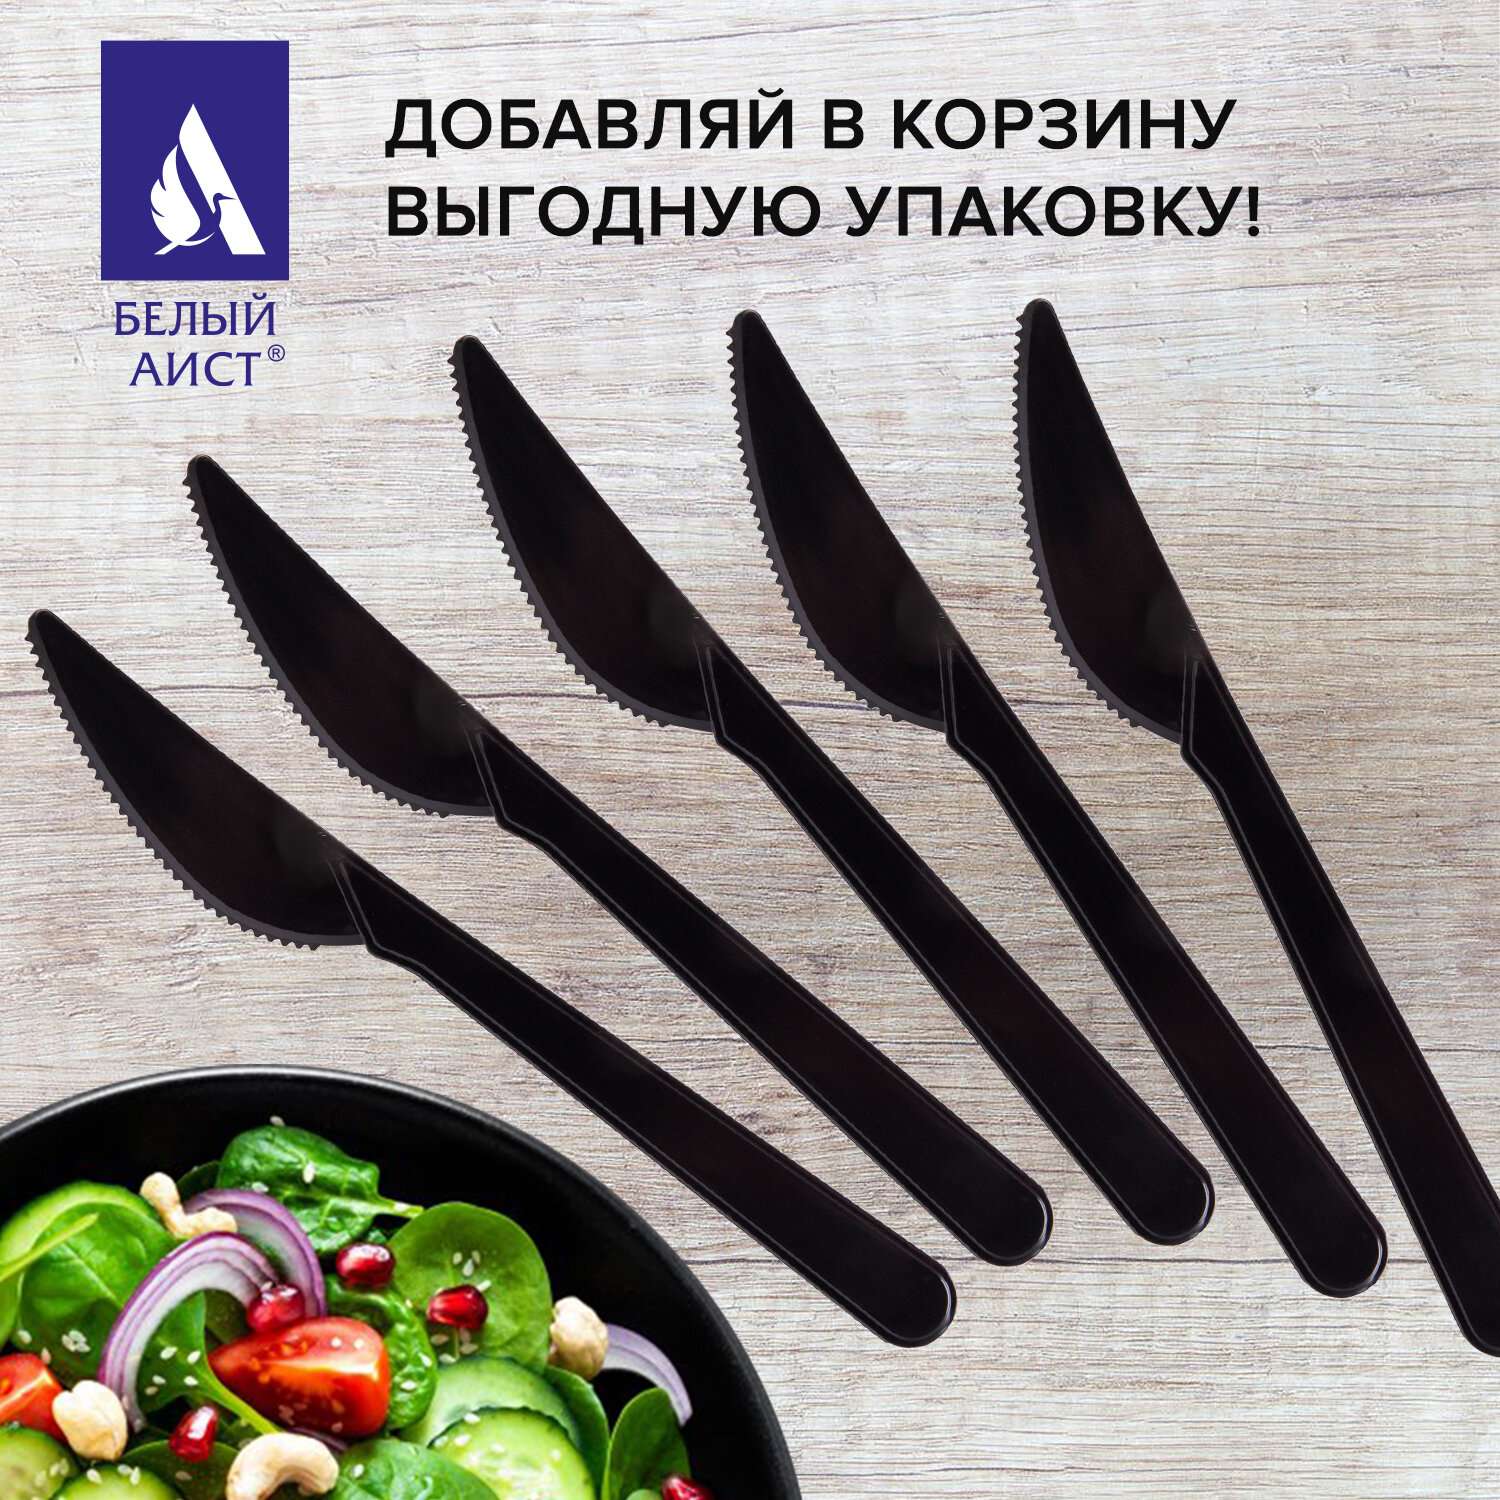 Ножи столовые БЕЛЫЙ АИСТ пластиковые одноразовые 180 мм 50 штук - фото 8